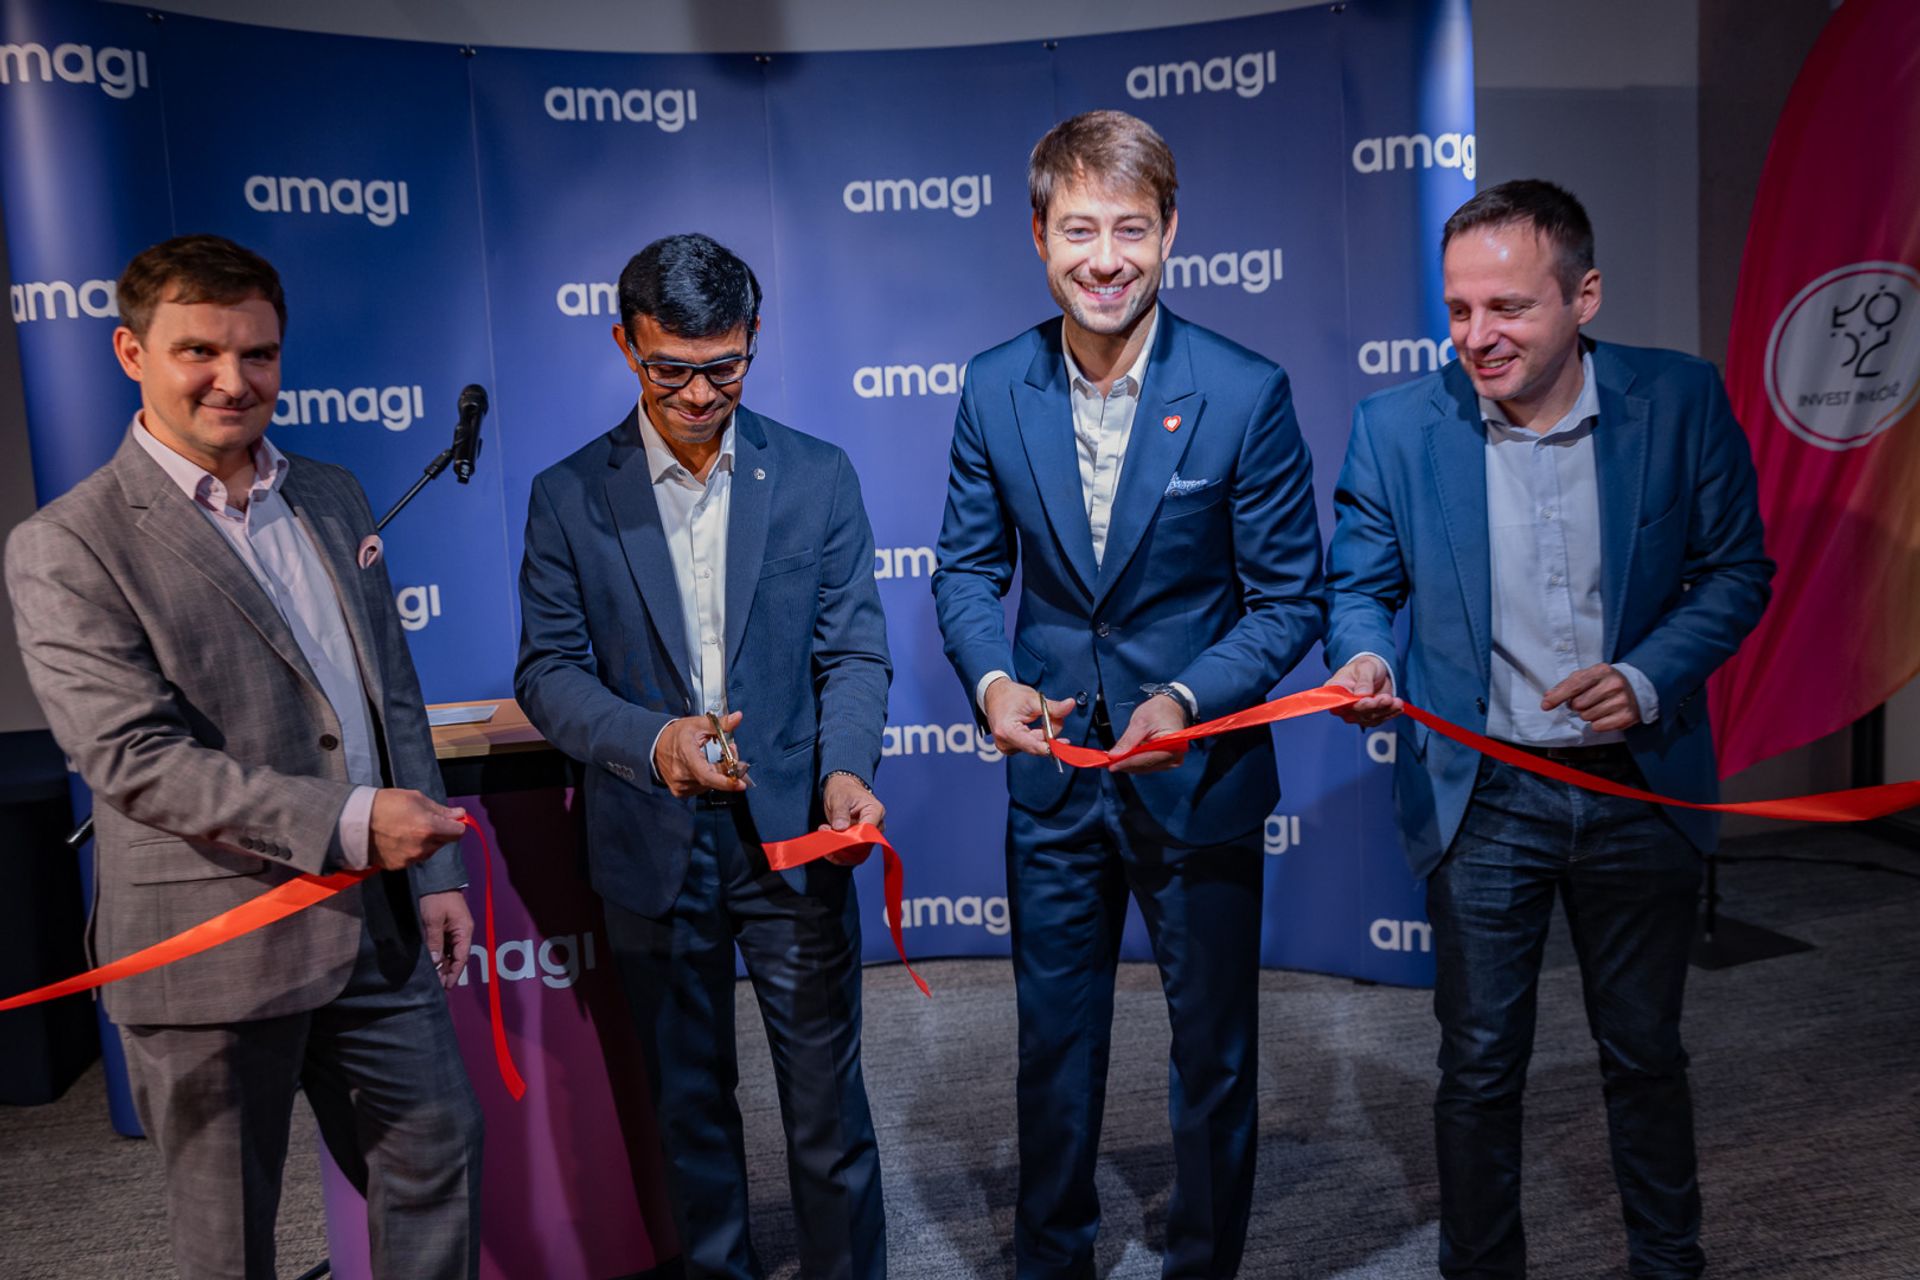 Globalna firma Amagi otworzyła Środkowoeuropejskie Centrum Innowacji w Łodzi